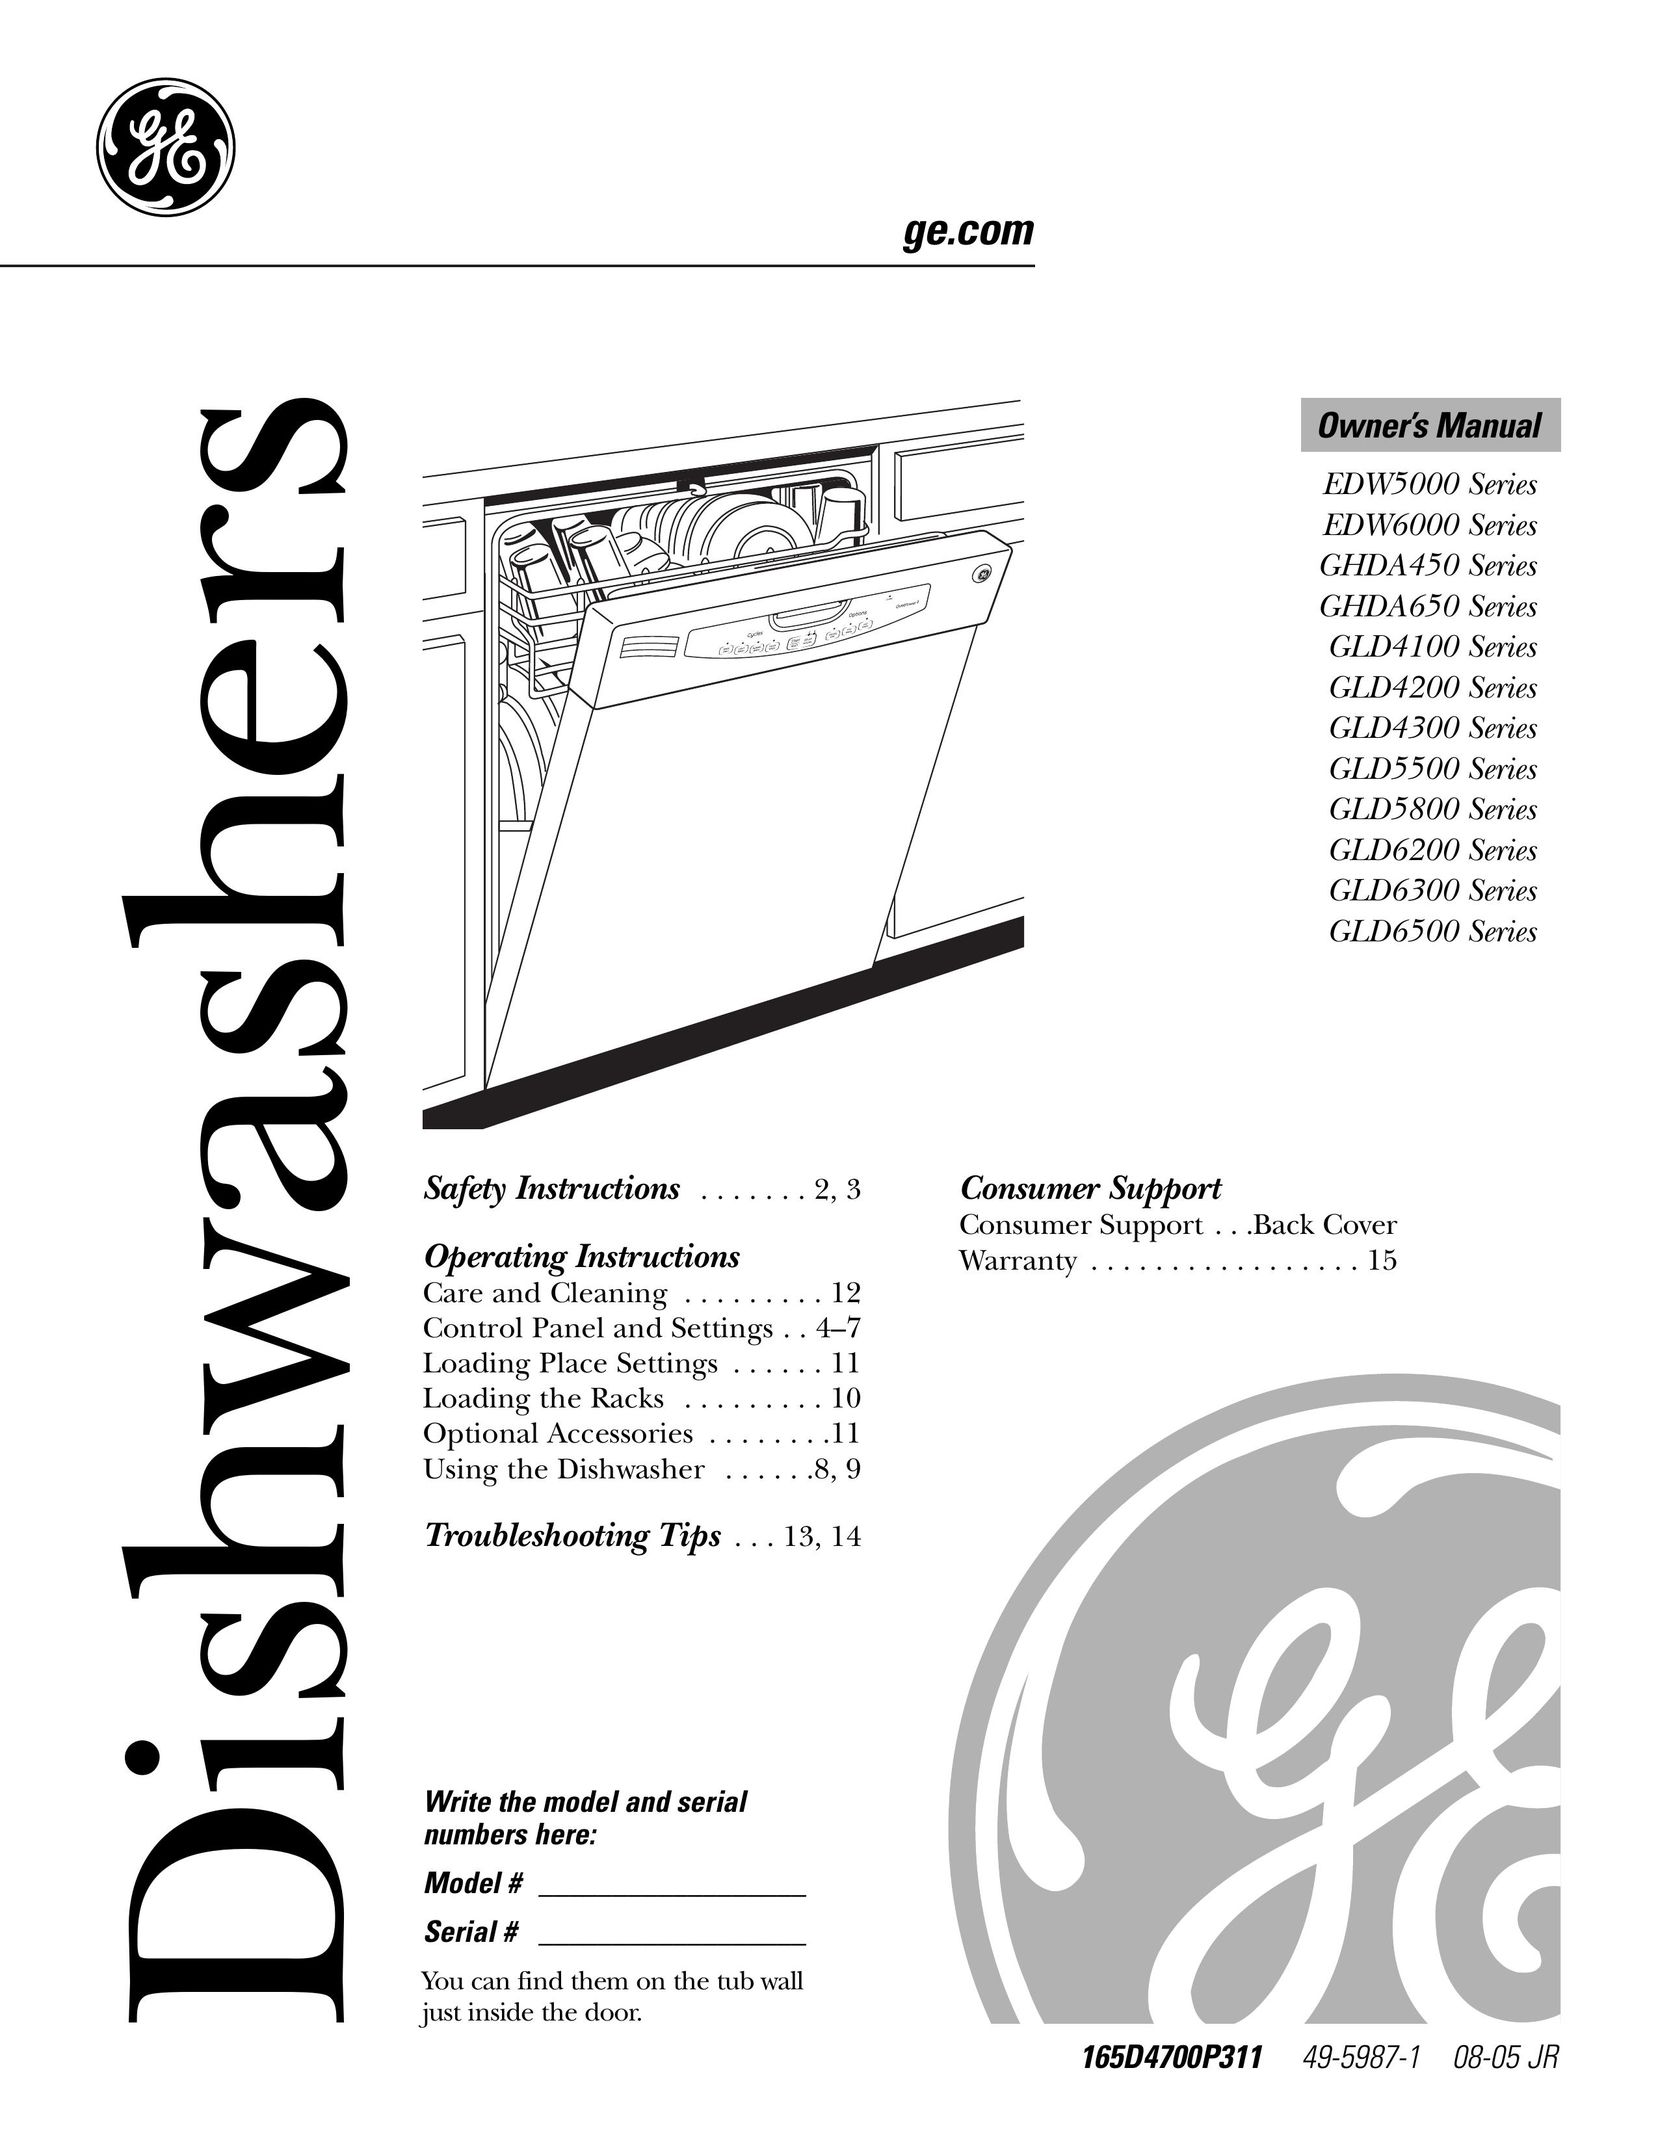 GE Monogram GLD6200 Dishwasher User Manual